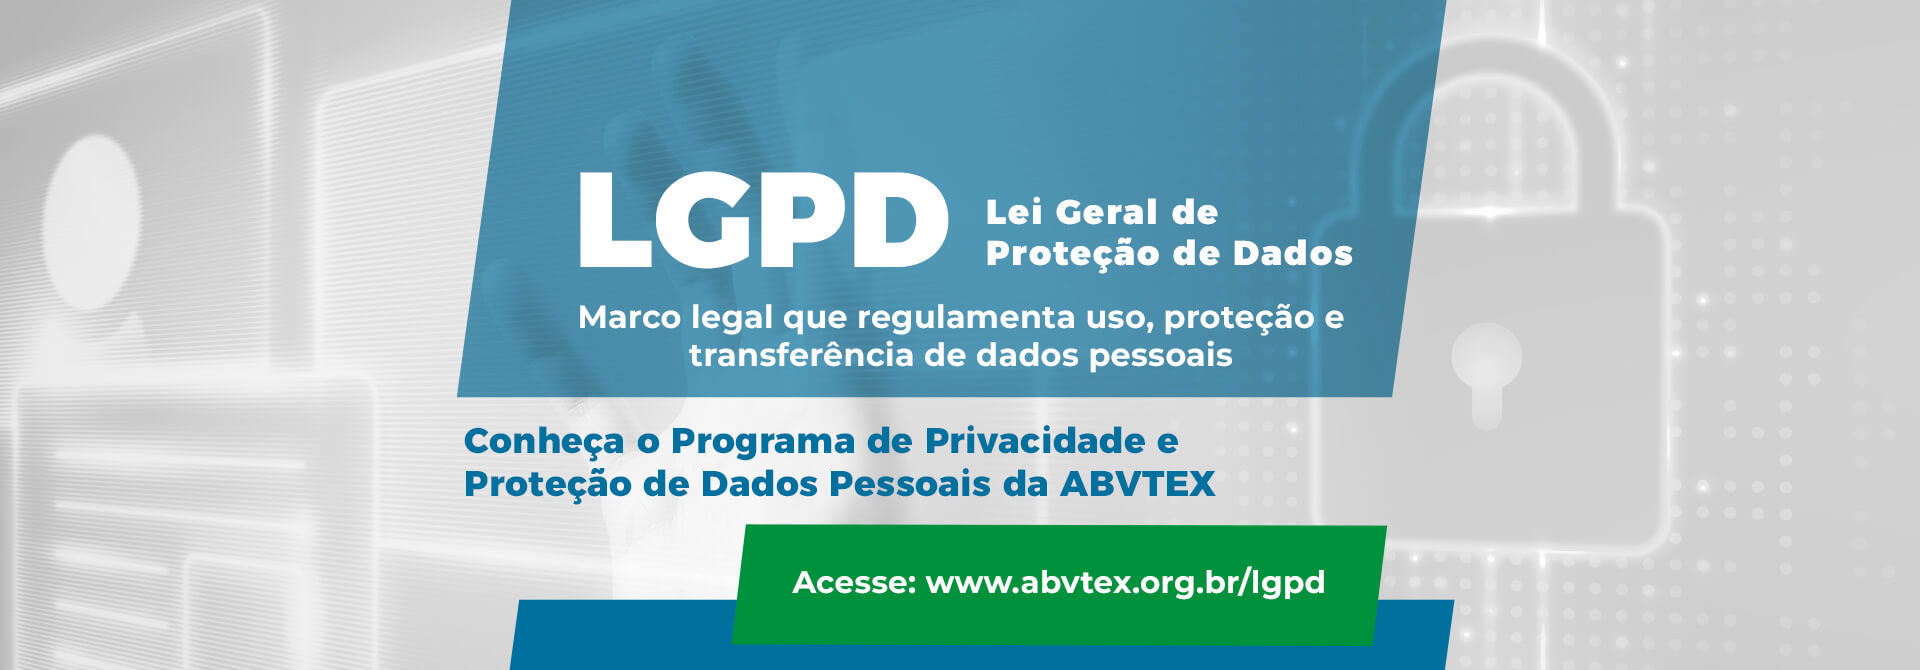 ABVTEX em conformidade com a LGPD